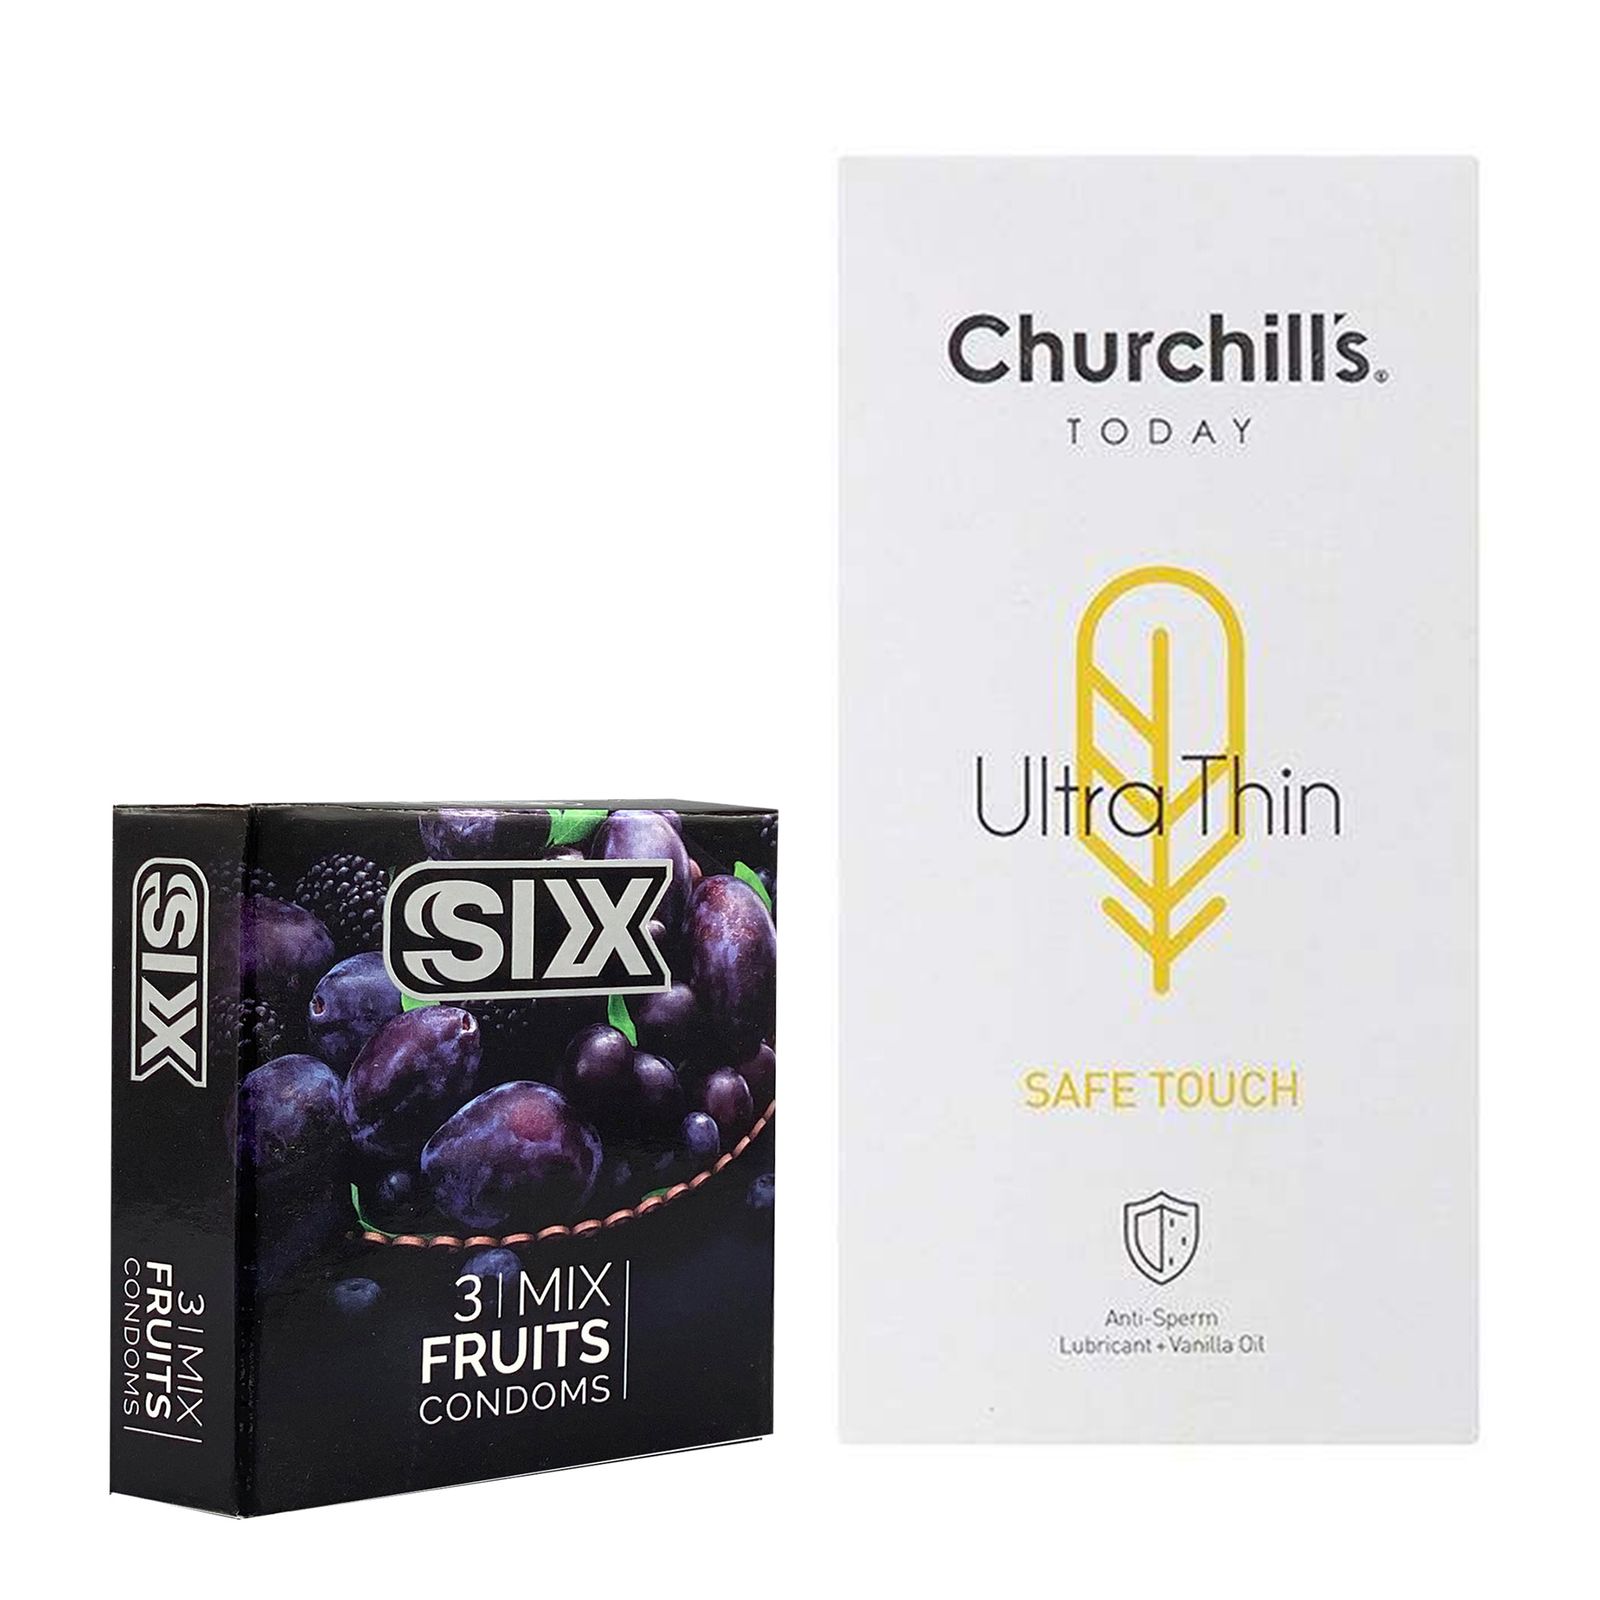 کاندوم چرچیلز مدل Safe Touch بسته 12 عددی به همراه کاندوم سیکس مدل میوه ای بسته 3 عددی